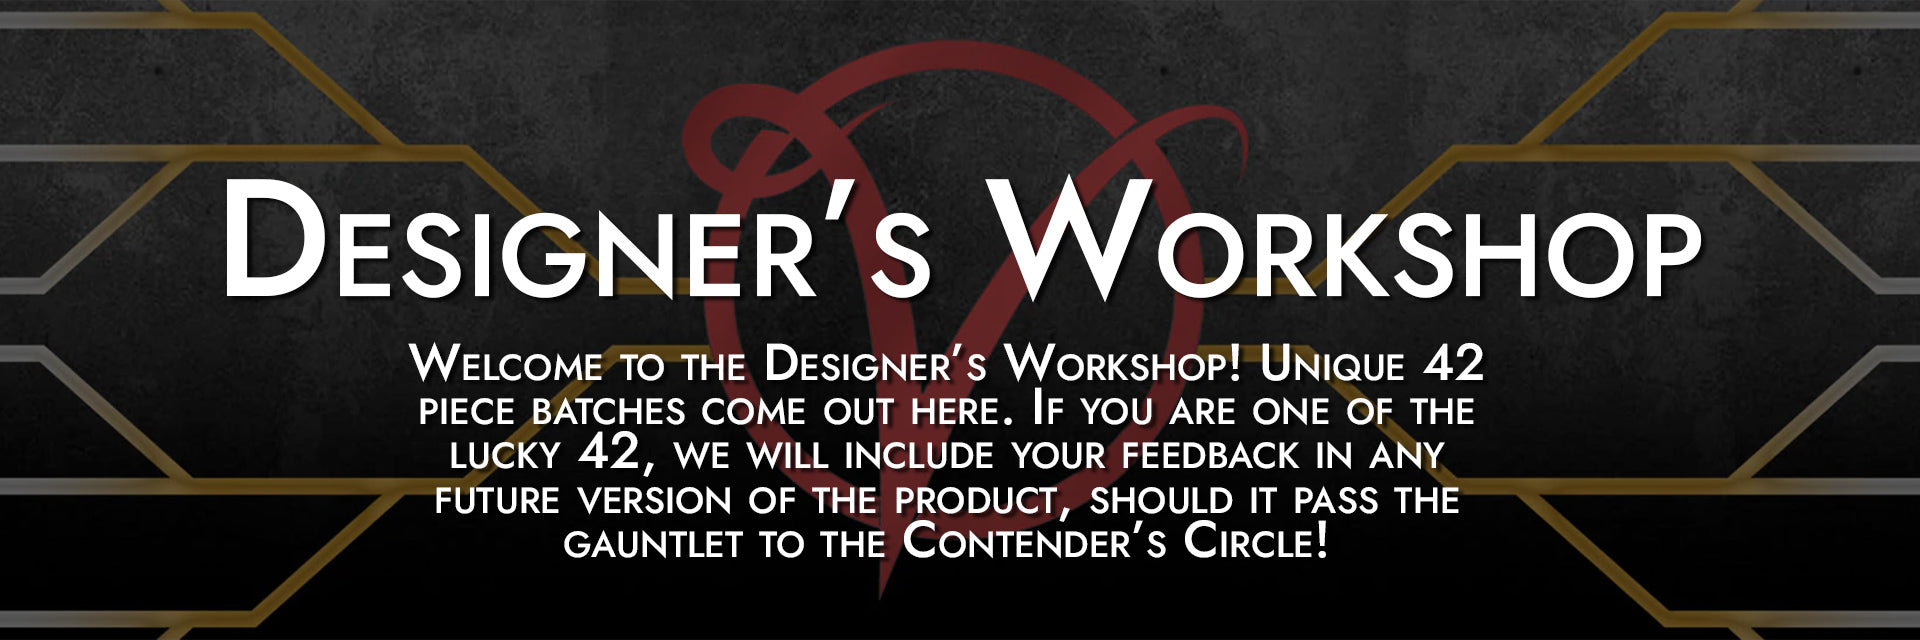 Designer's Workshop